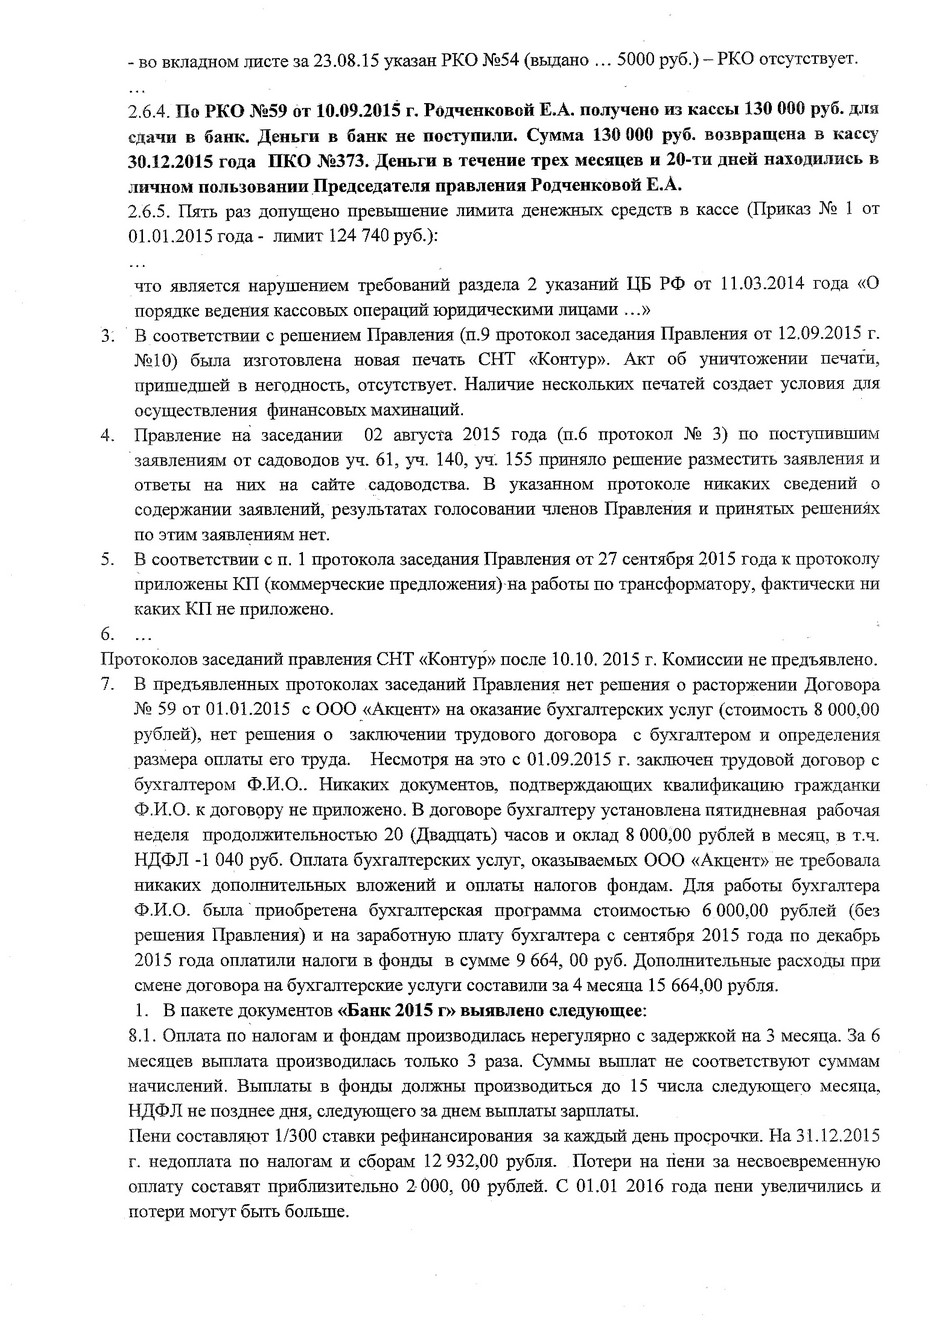 Обращение ревизионной комиссии к садоводам СНТ "Контур"